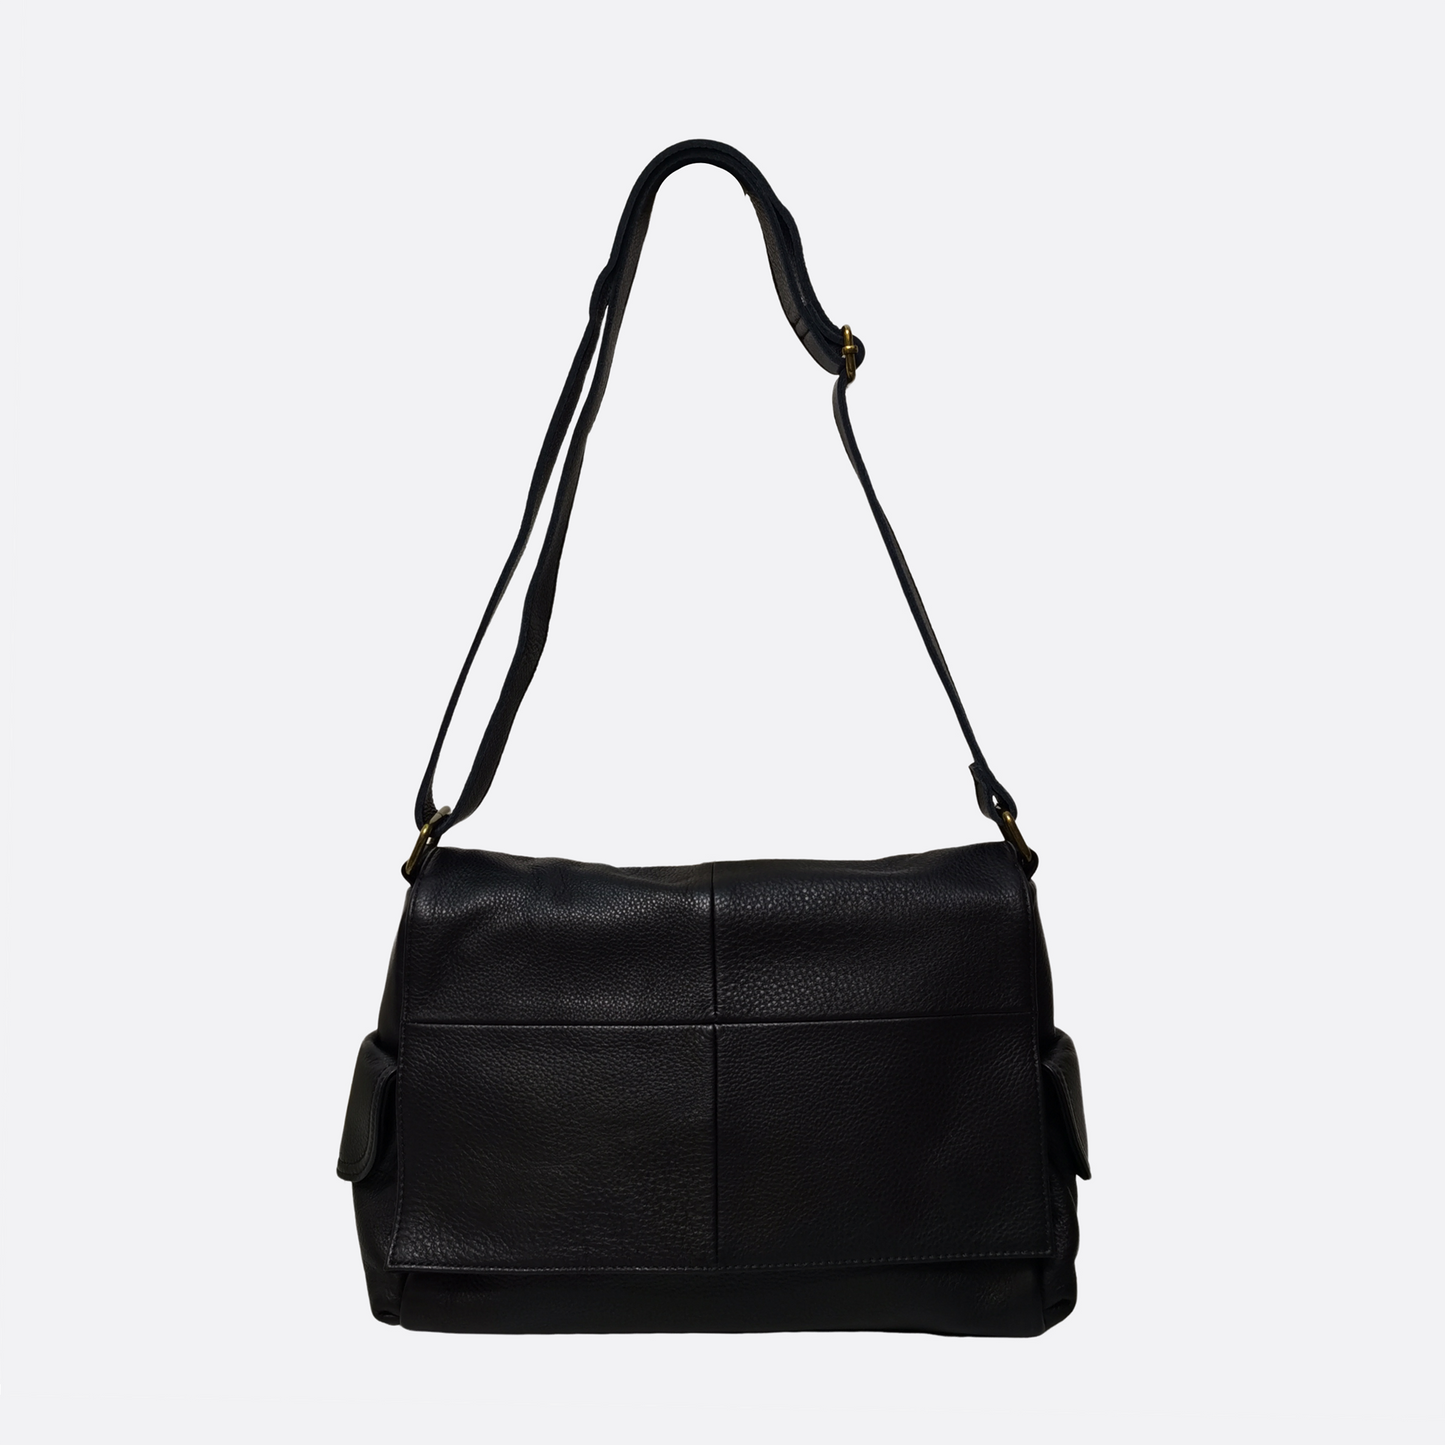 Unisex genuine cowhide leather satchel messenger V2 sling bag handbag